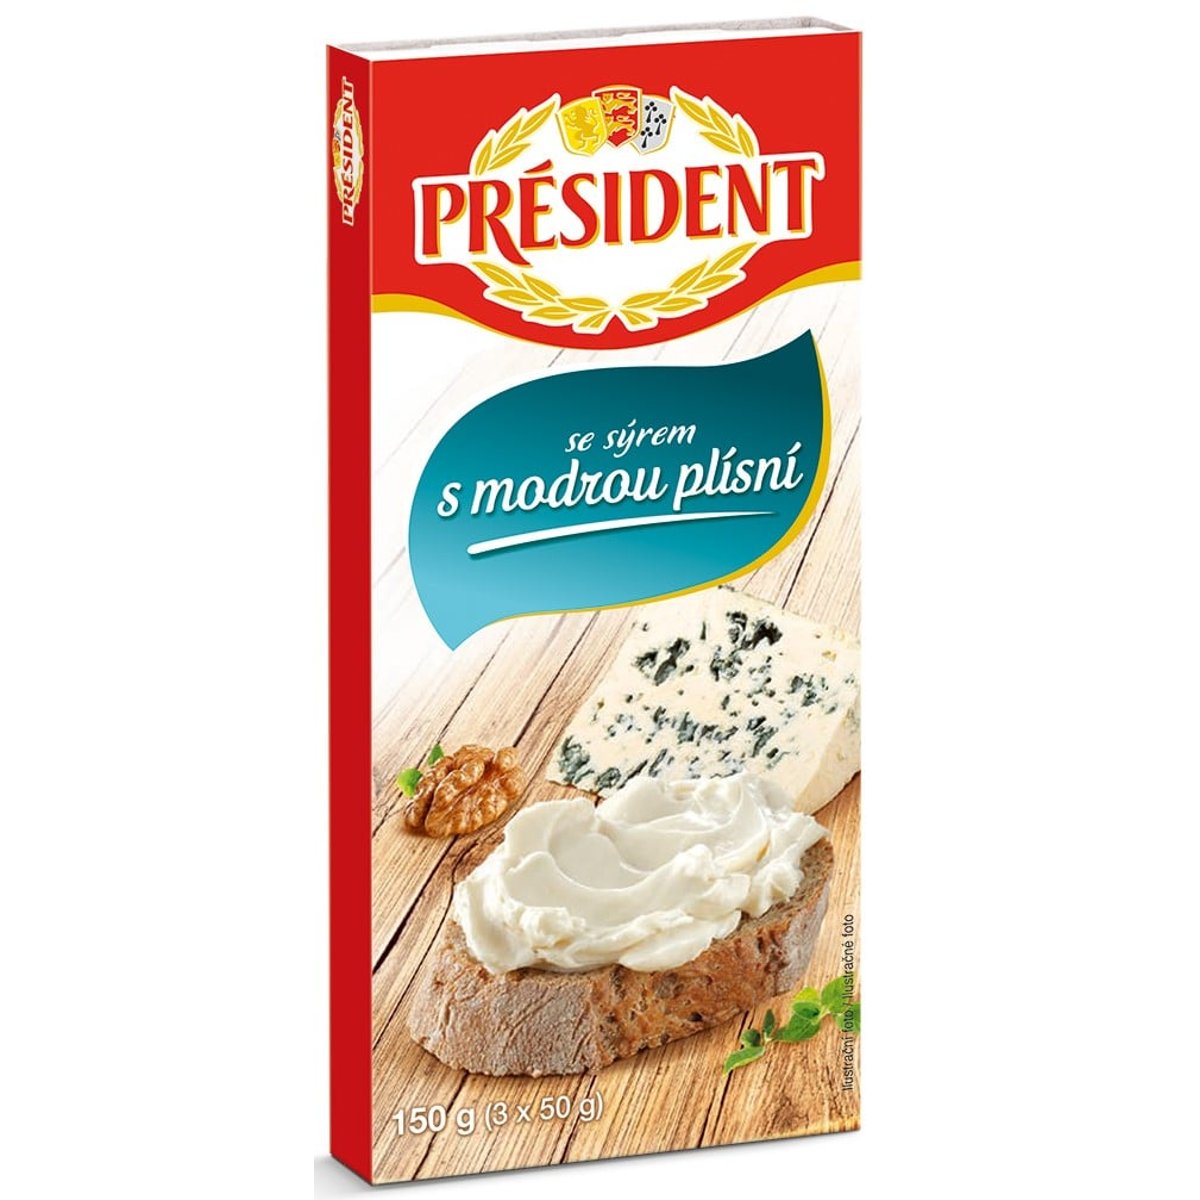 Président Tavený sýr s modrou plísní